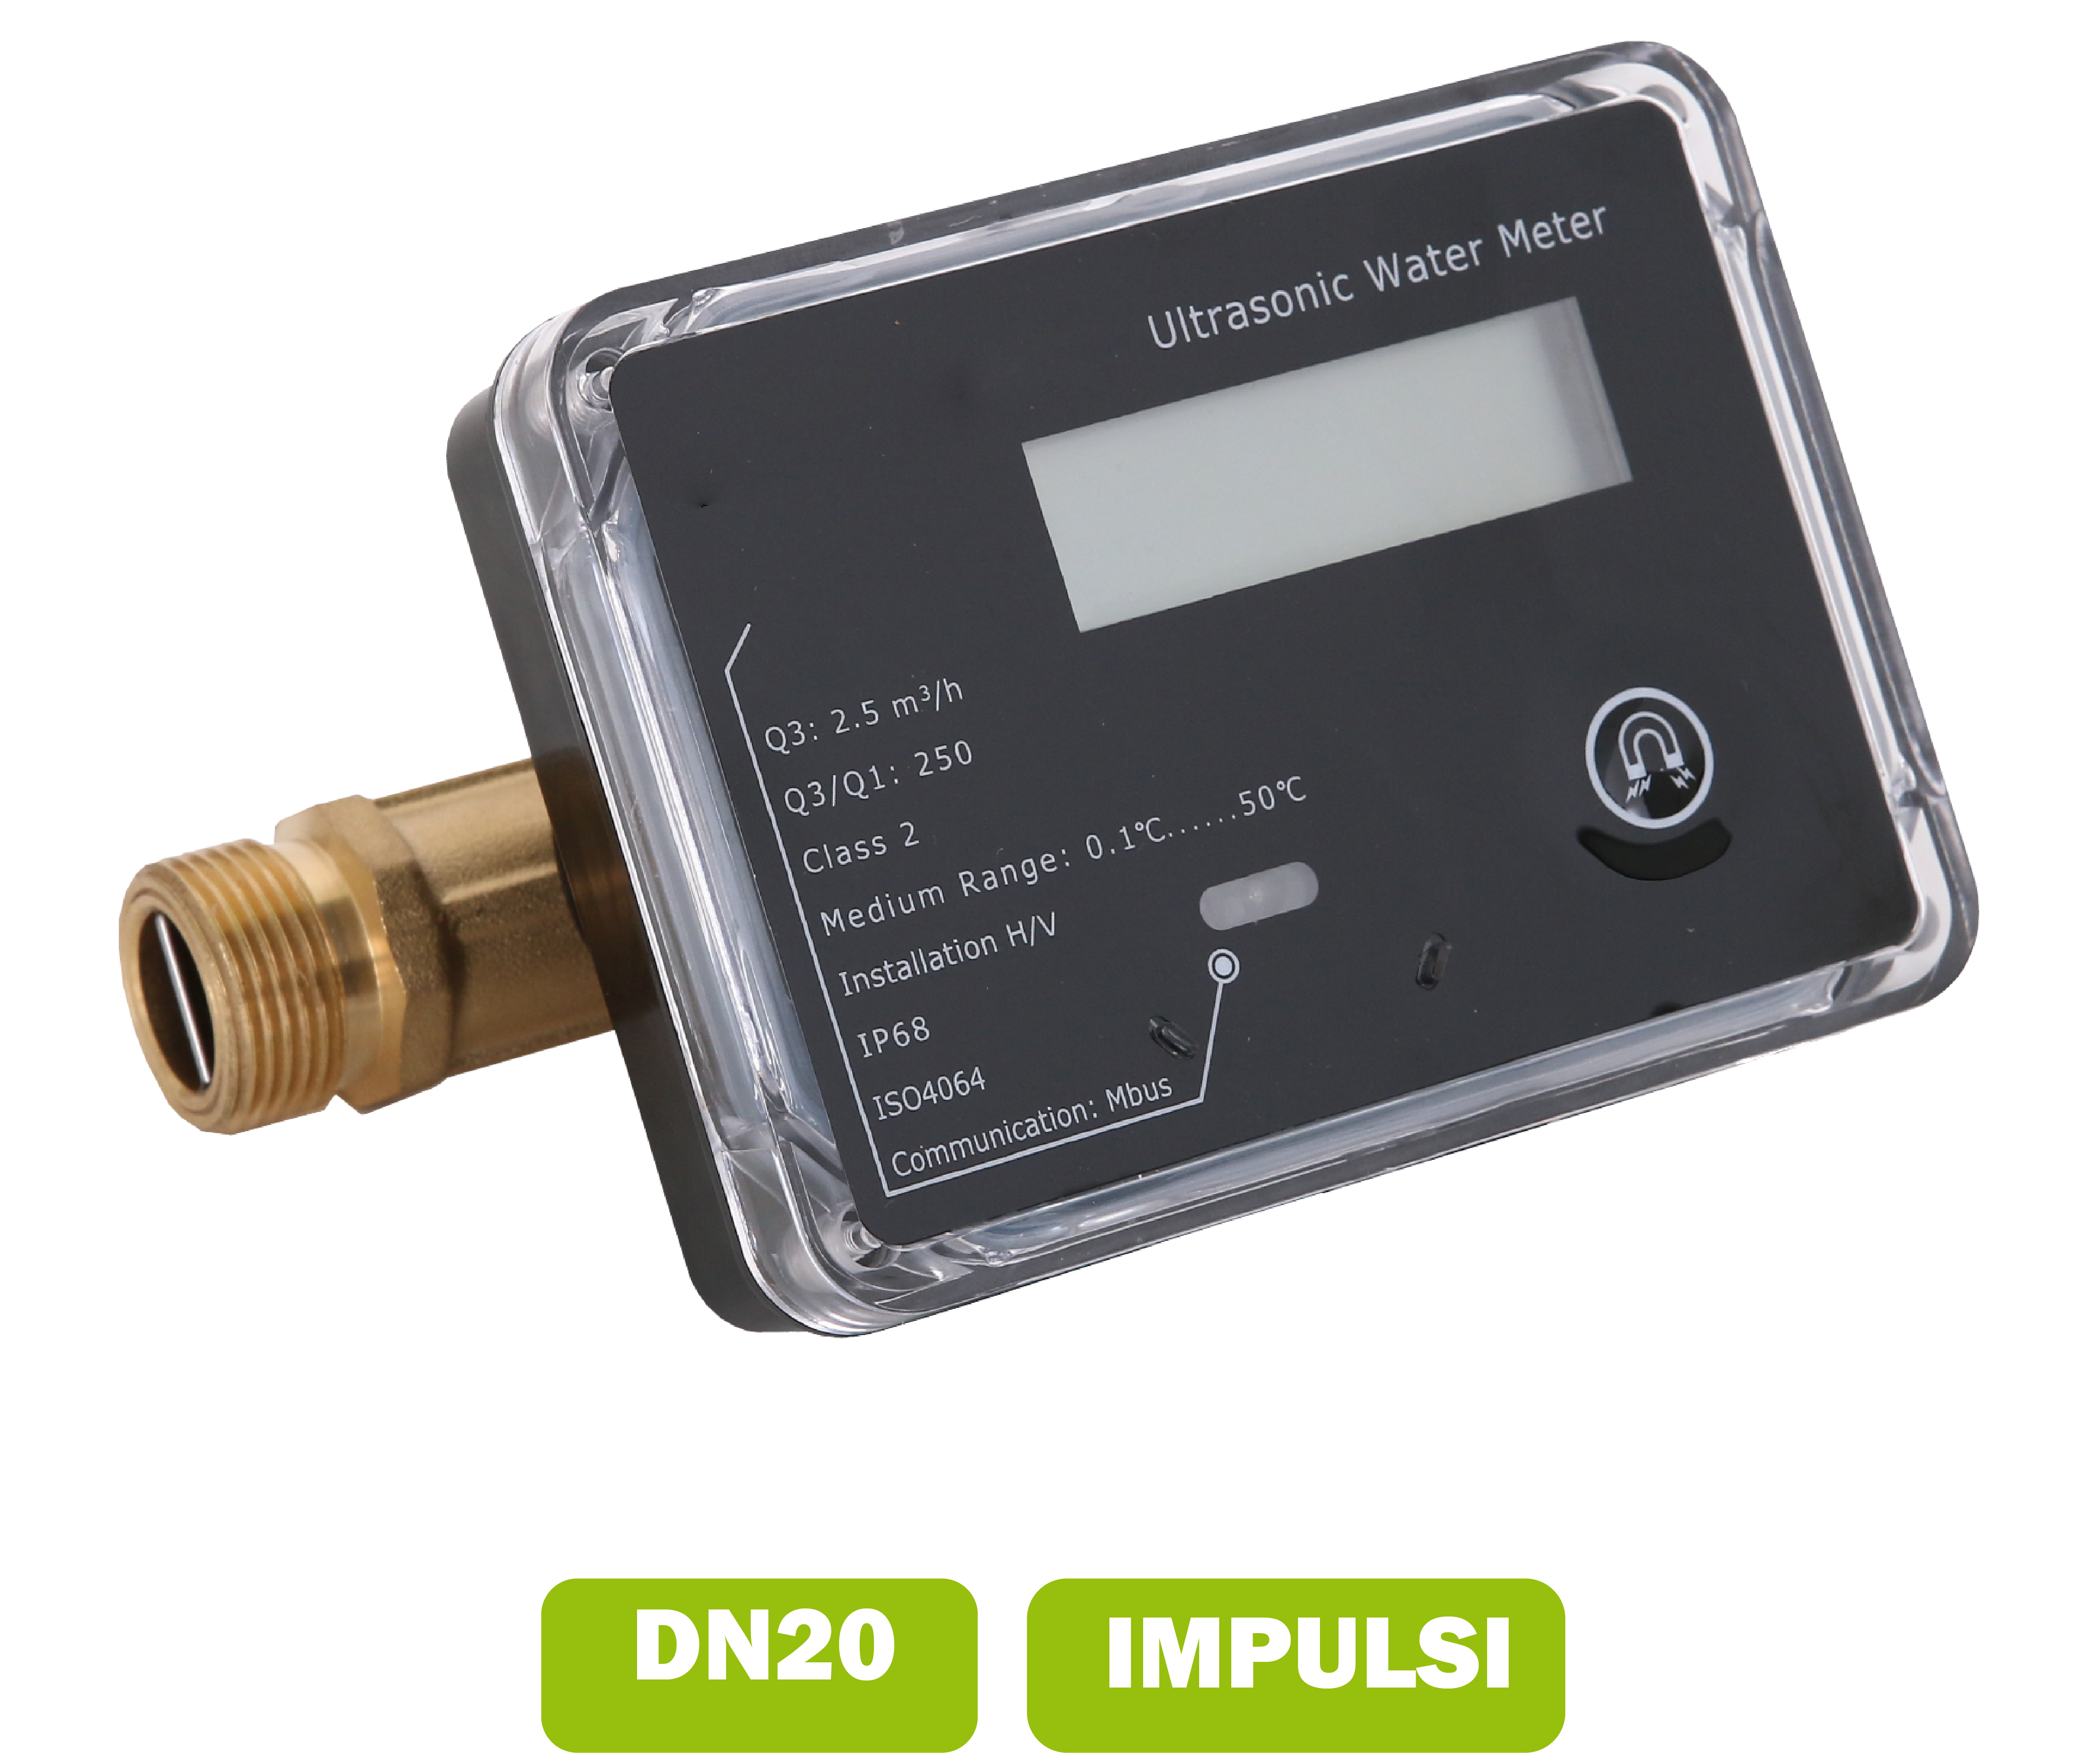 Water meter (calda fredda) a ultrasuoni DN20 portata media 2.5 m3/h con interfaccia impulsi